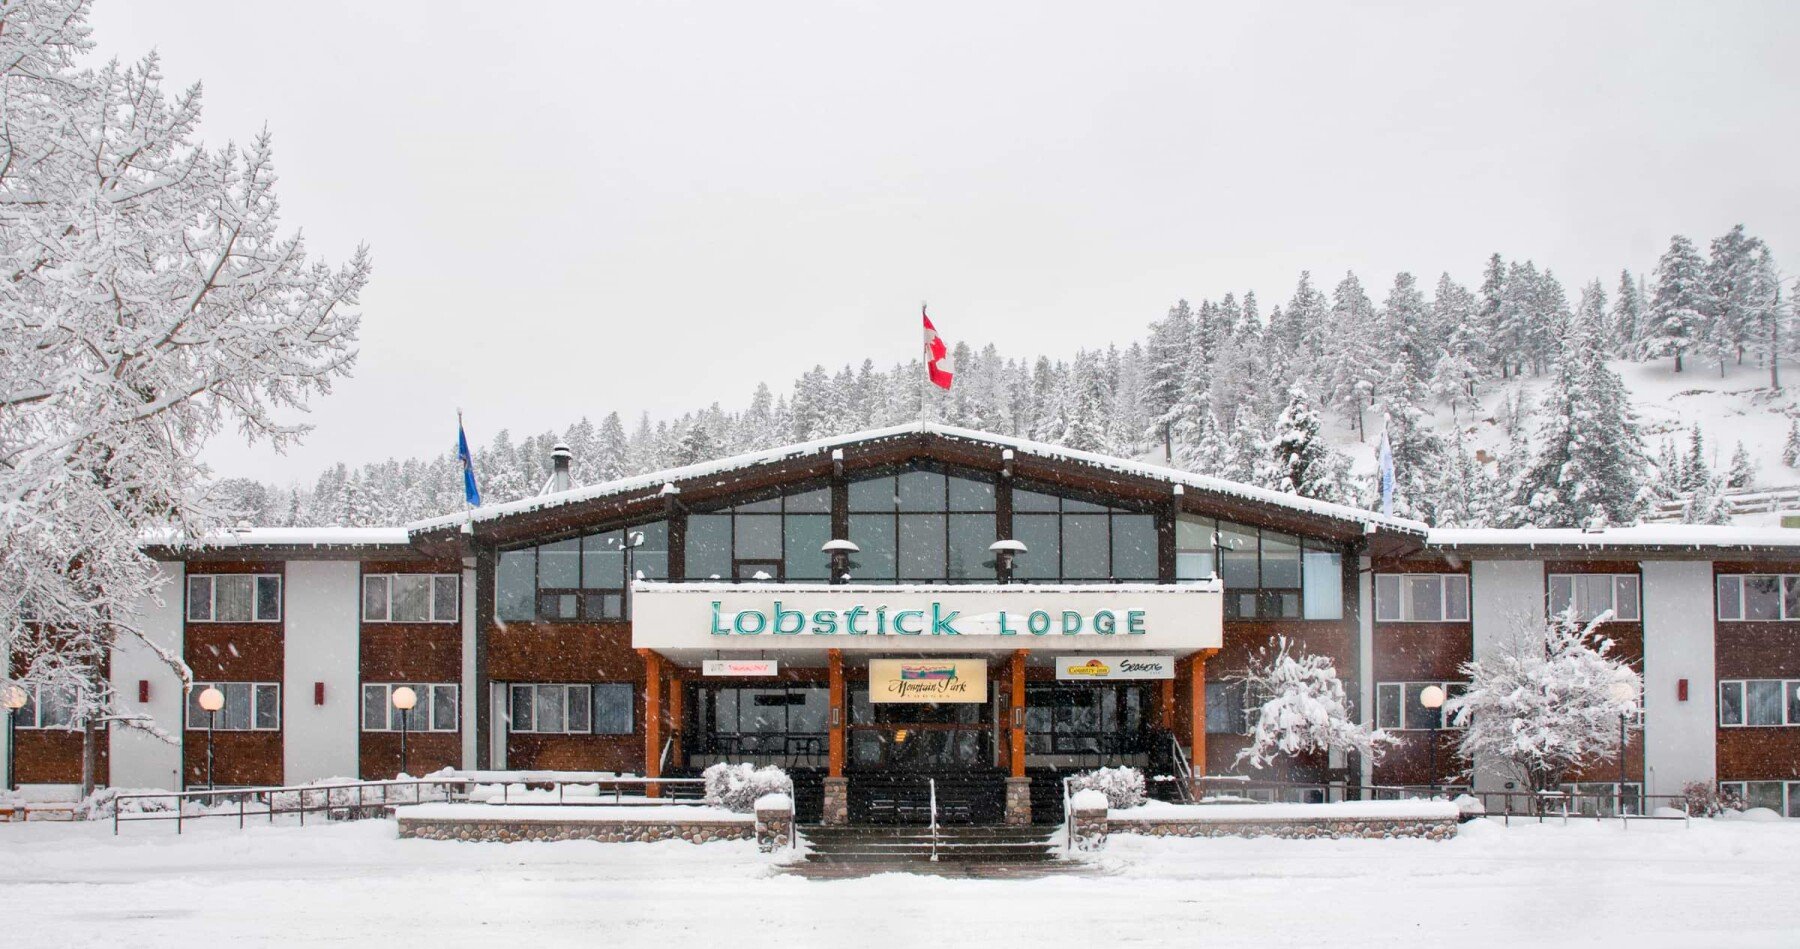 Lobstick Lodge Exterior